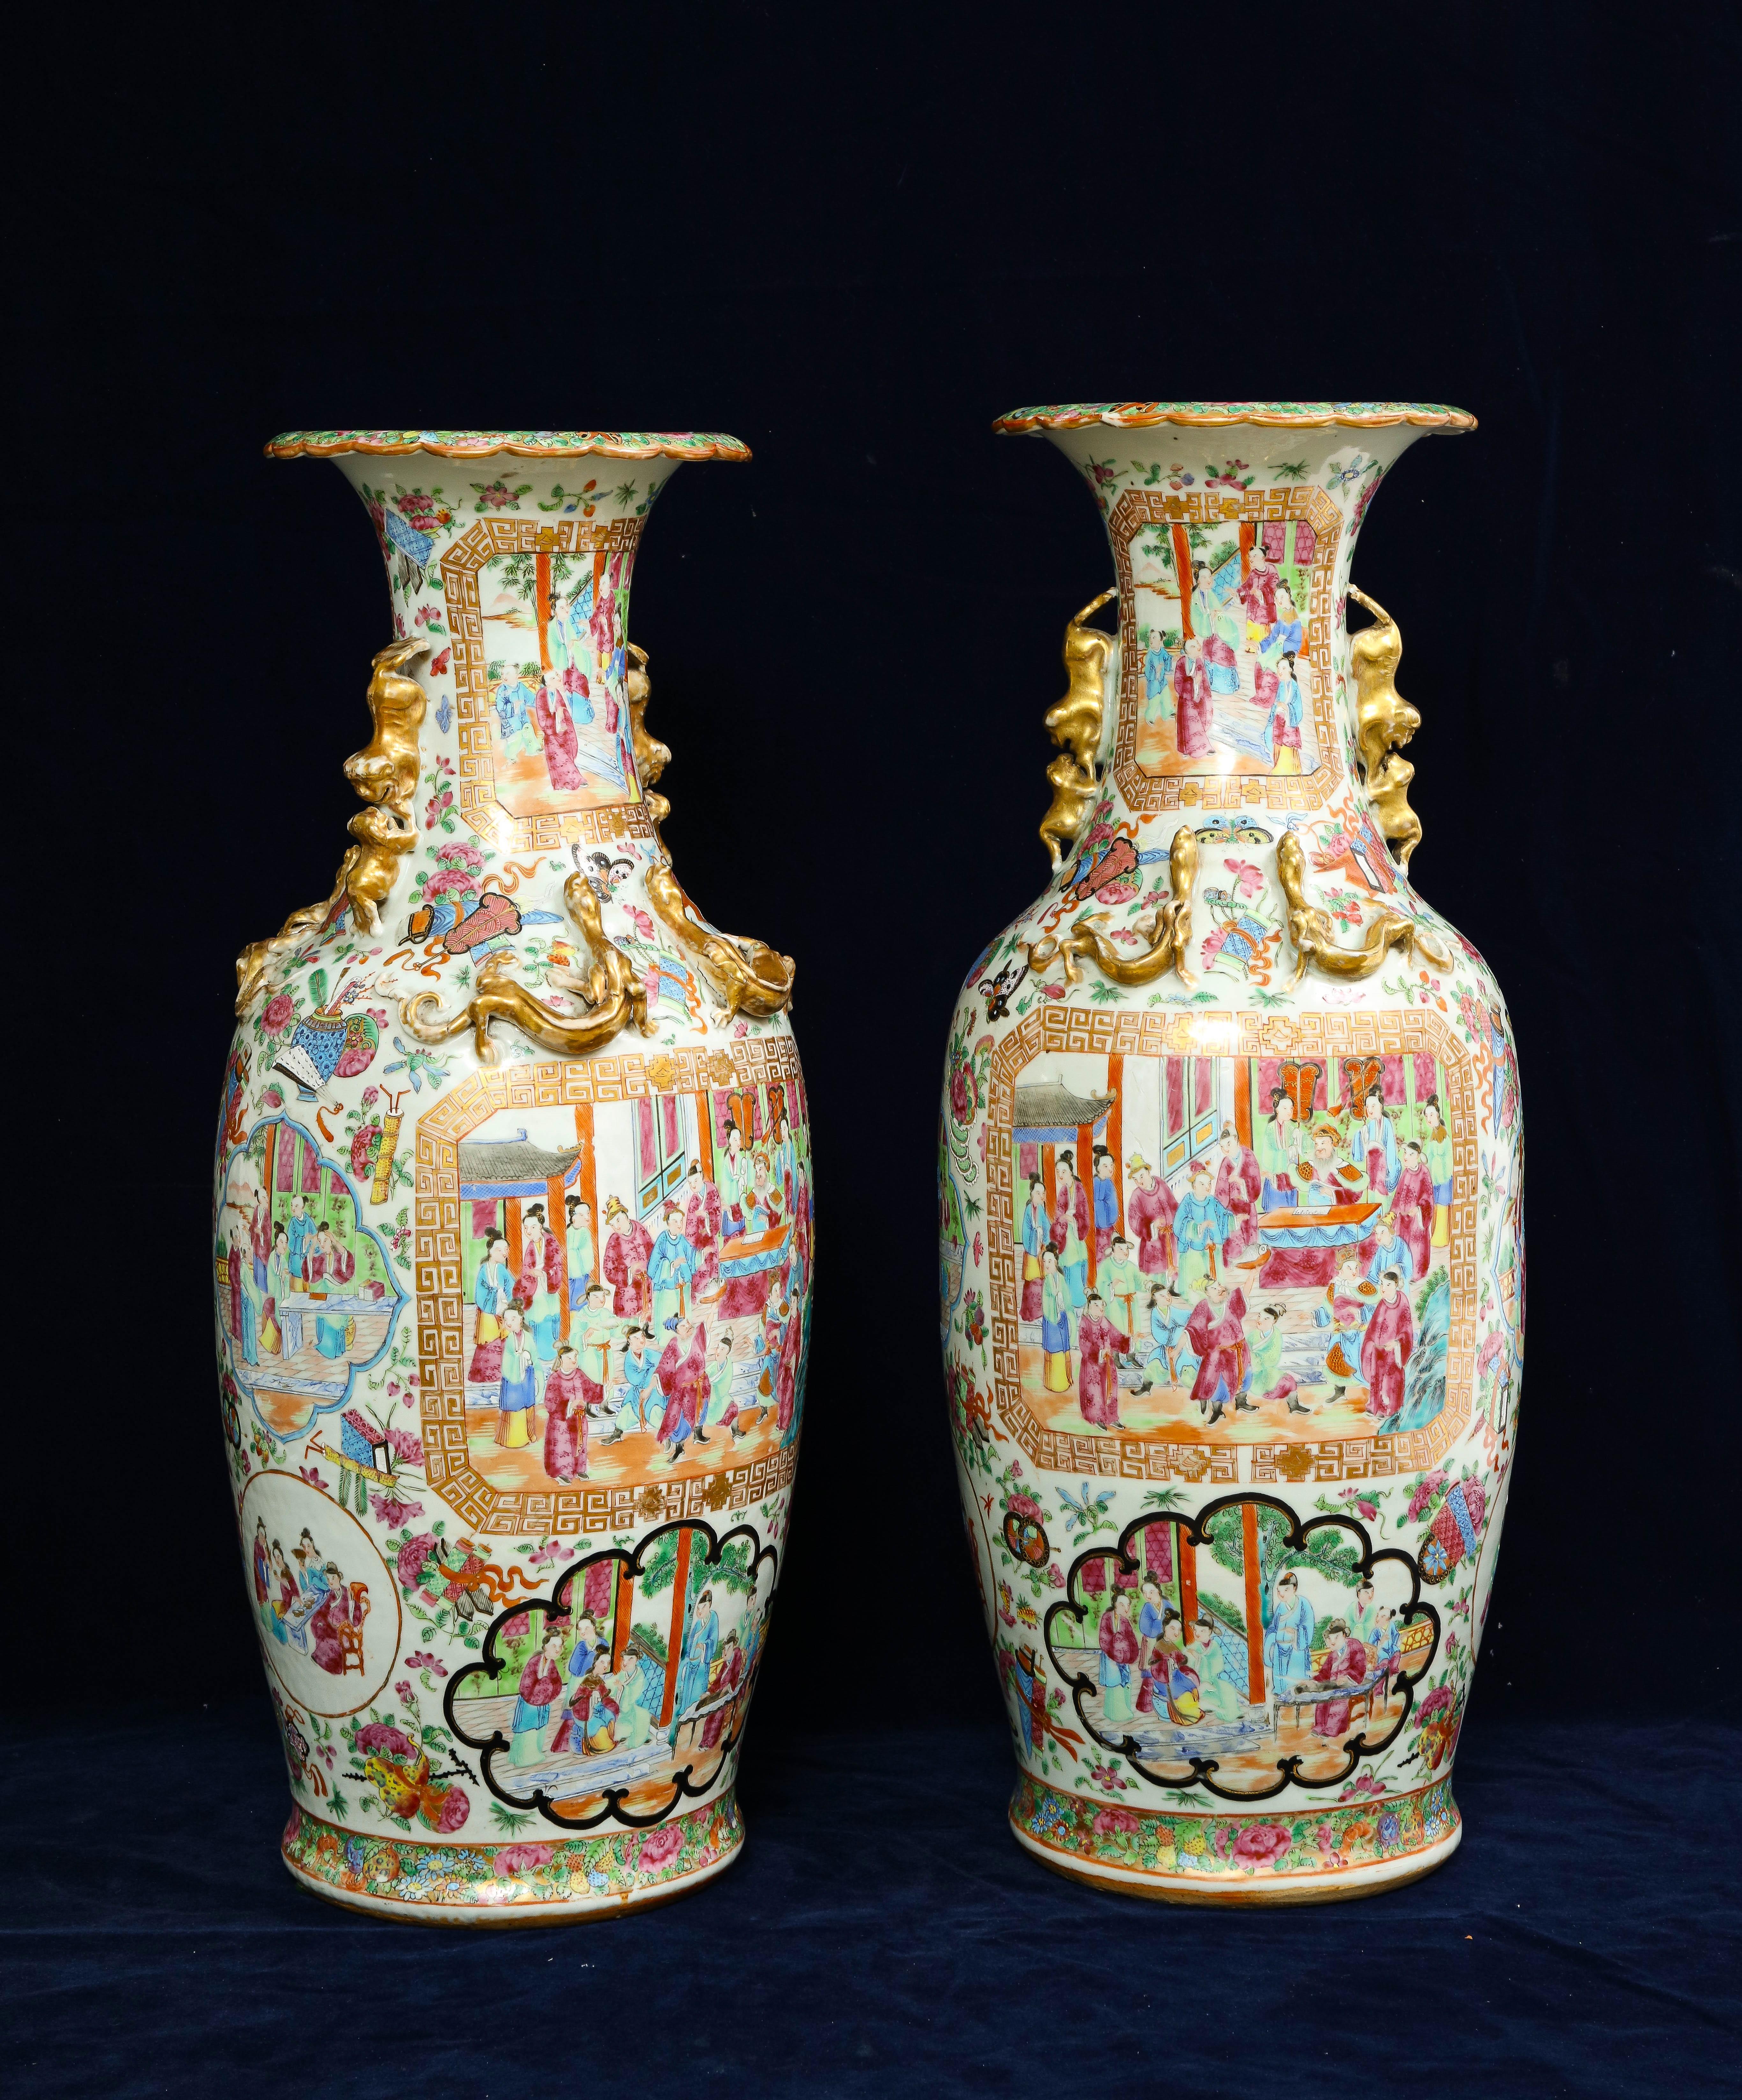 Ein feines Paar chinesischer Rosenmedaillon-Porzellanvasen des 19. Jahrhunderts. Jede hat die Form eines eiförmigen Balusters mit einer blütenförmigen Öffnung, die reich mit Blumen und Schmetterlingen verziert ist. Der Korpus ist wunderschön